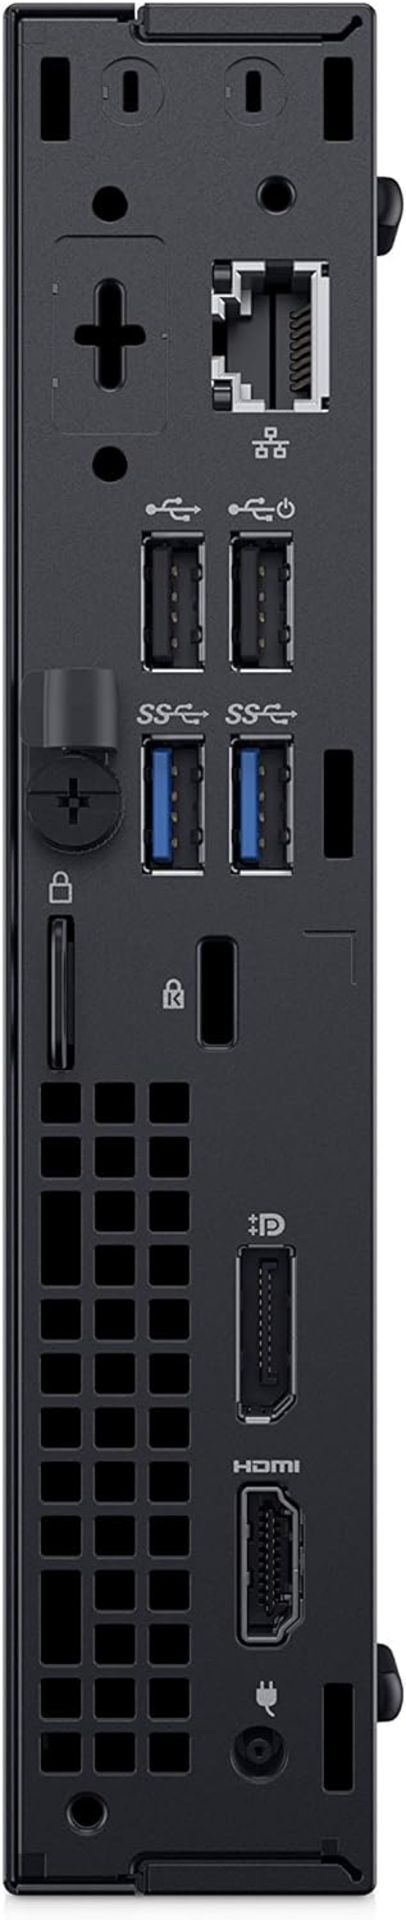 DELL OPTIPLEX 3070 USFF PC WITH INTEL I3-9100T - 9TH GEN CPU, 4GB RAM, 128GB SSD, POWER ADAPTER & - Bild 2 aus 4